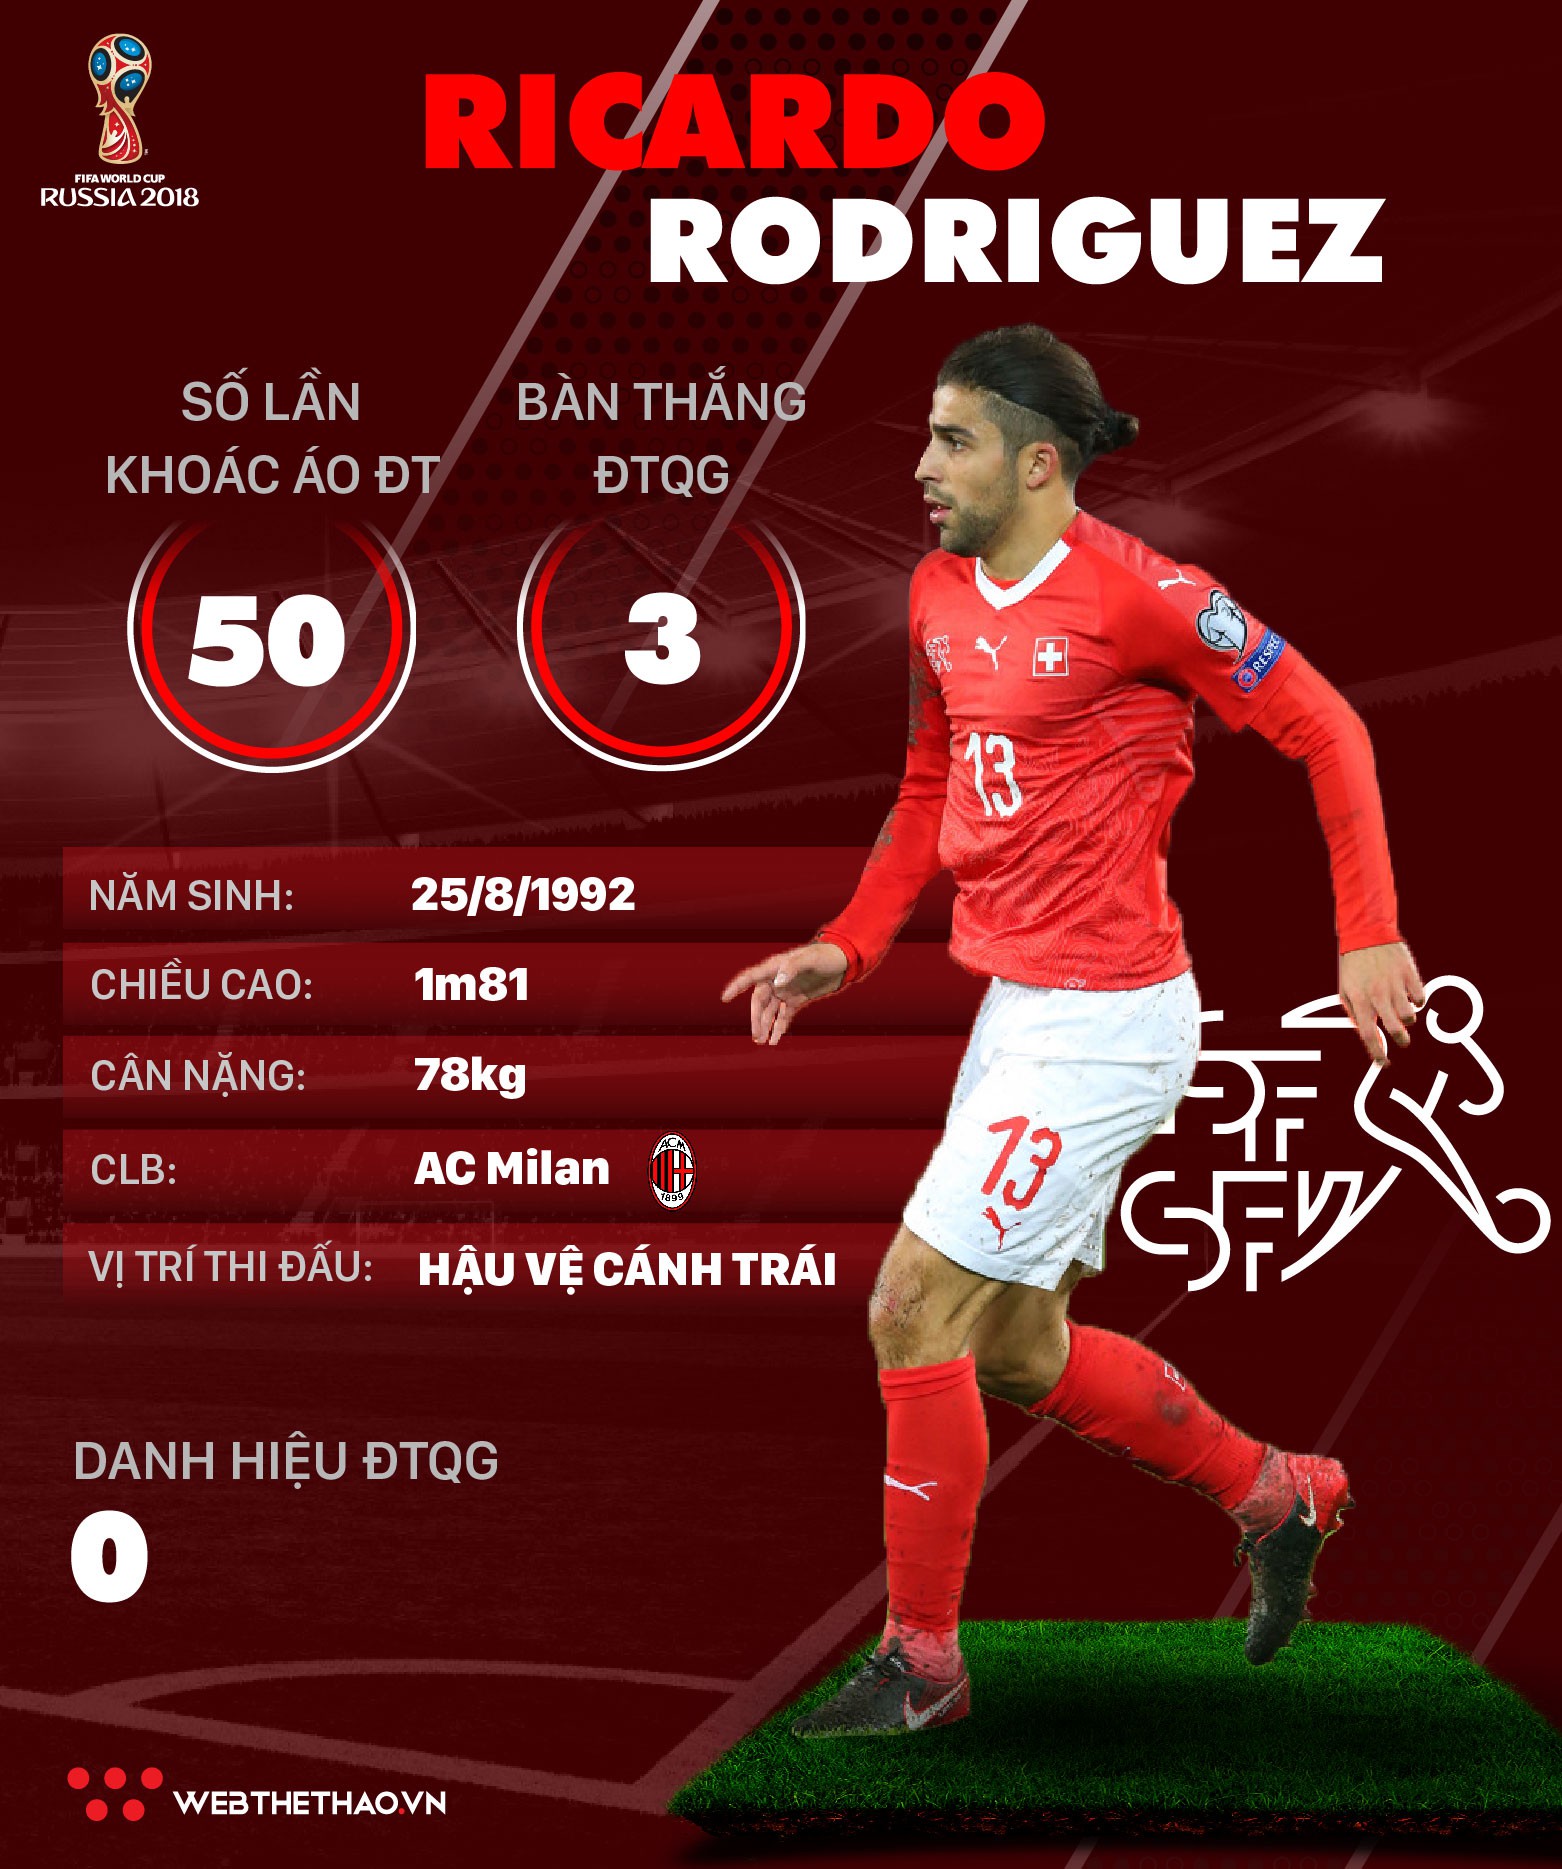 Thông tin cầu thủ Ricardo Rodriguez của ĐT Thụy Sĩ dự World Cup 2018 - Ảnh 1.